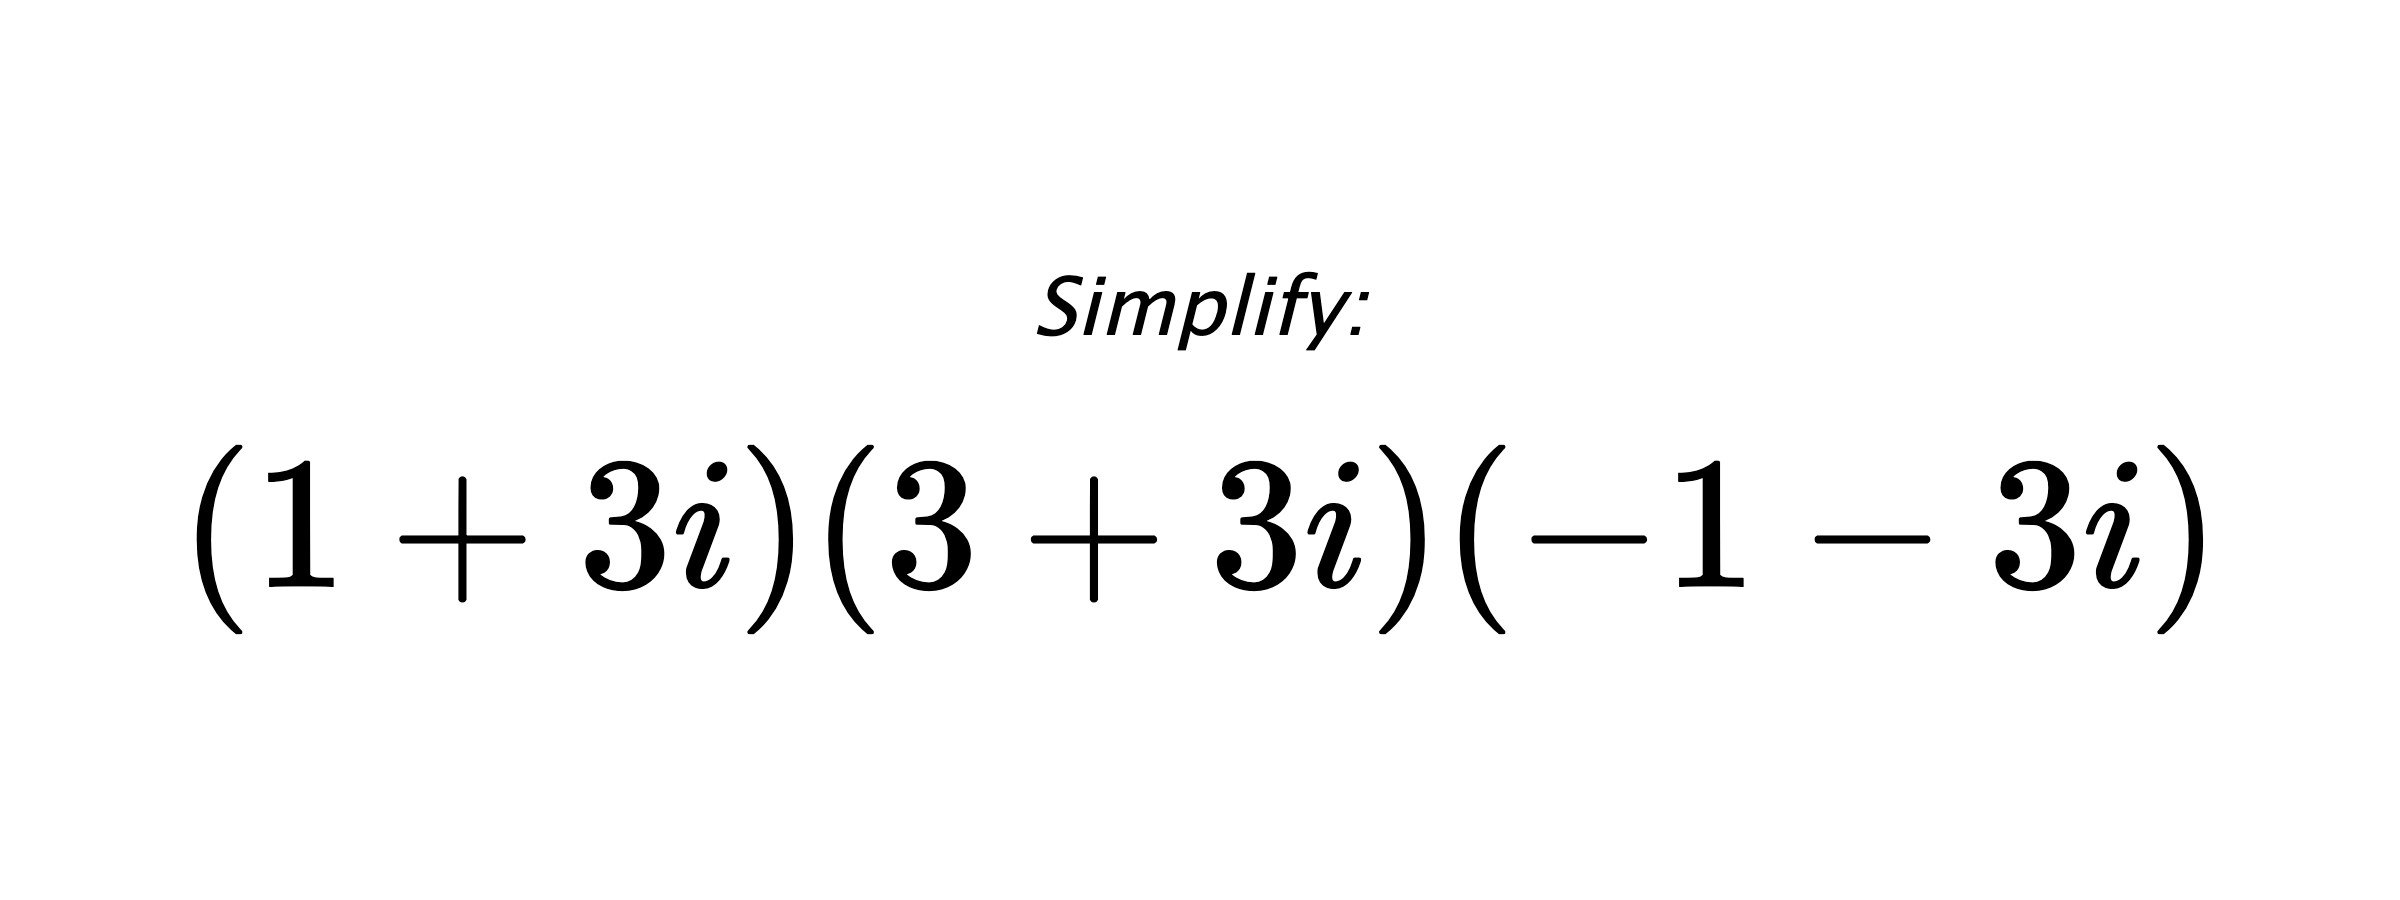 Simplify: $ (1+3i)(3+3i)(-1-3i) $